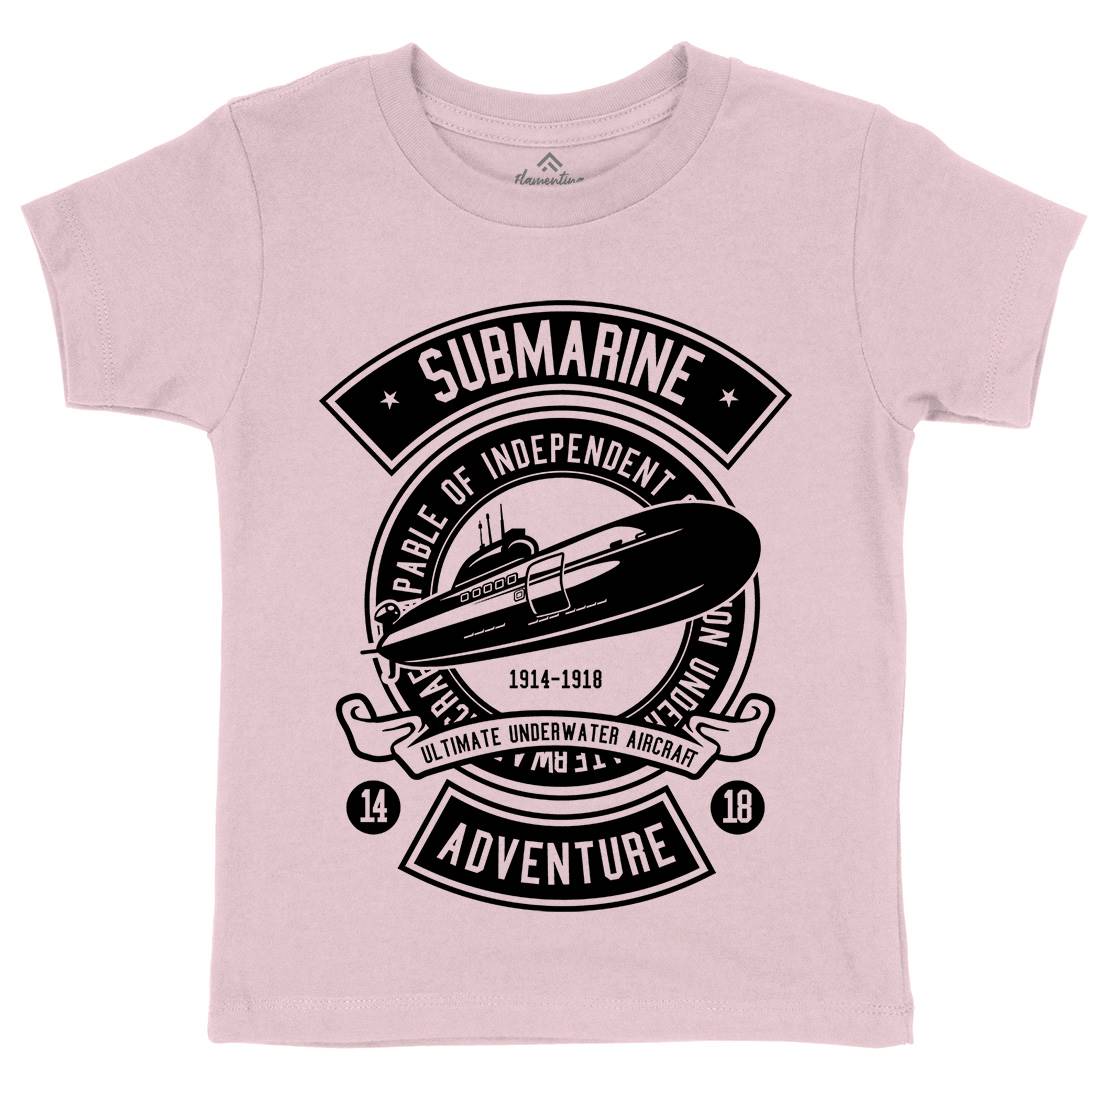 Submarine Kids Crew Neck T-Shirt Navy B645